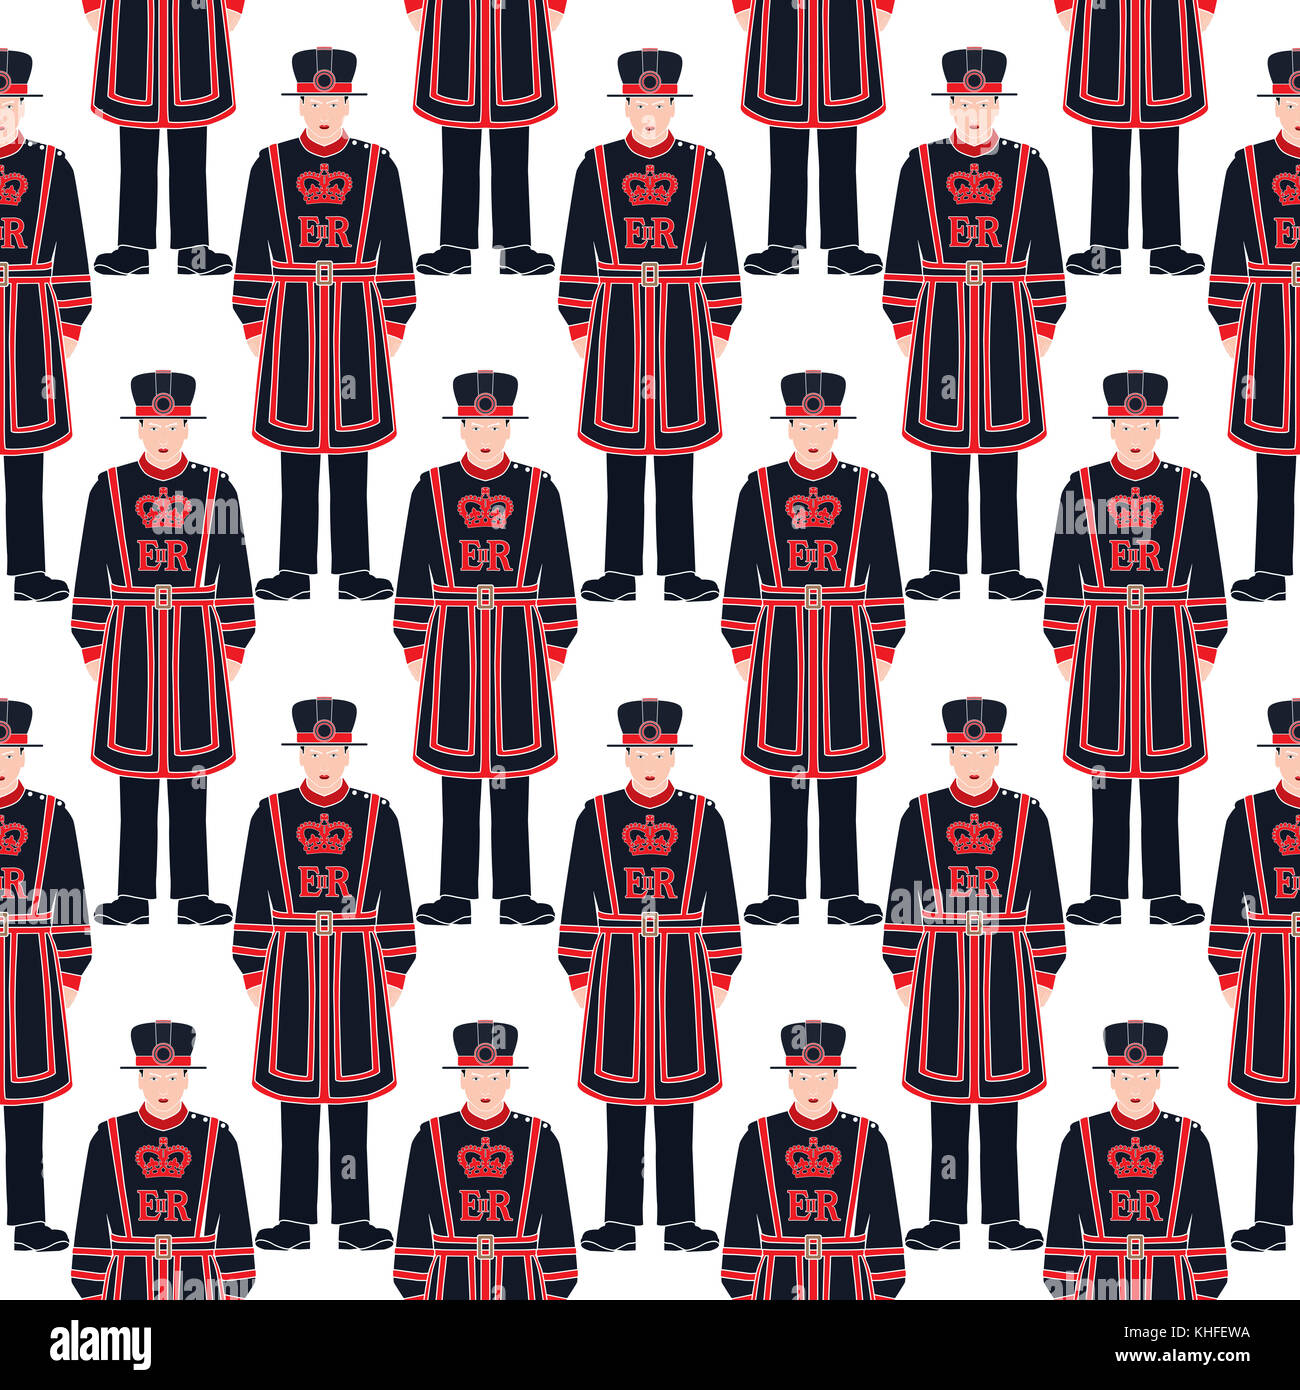 Beefeater Soldat - Yeoman Warder - London Symbol - nahtlose Vektor Muster - Silhouette - Schablone - detaillierte Darstellung Stockfoto